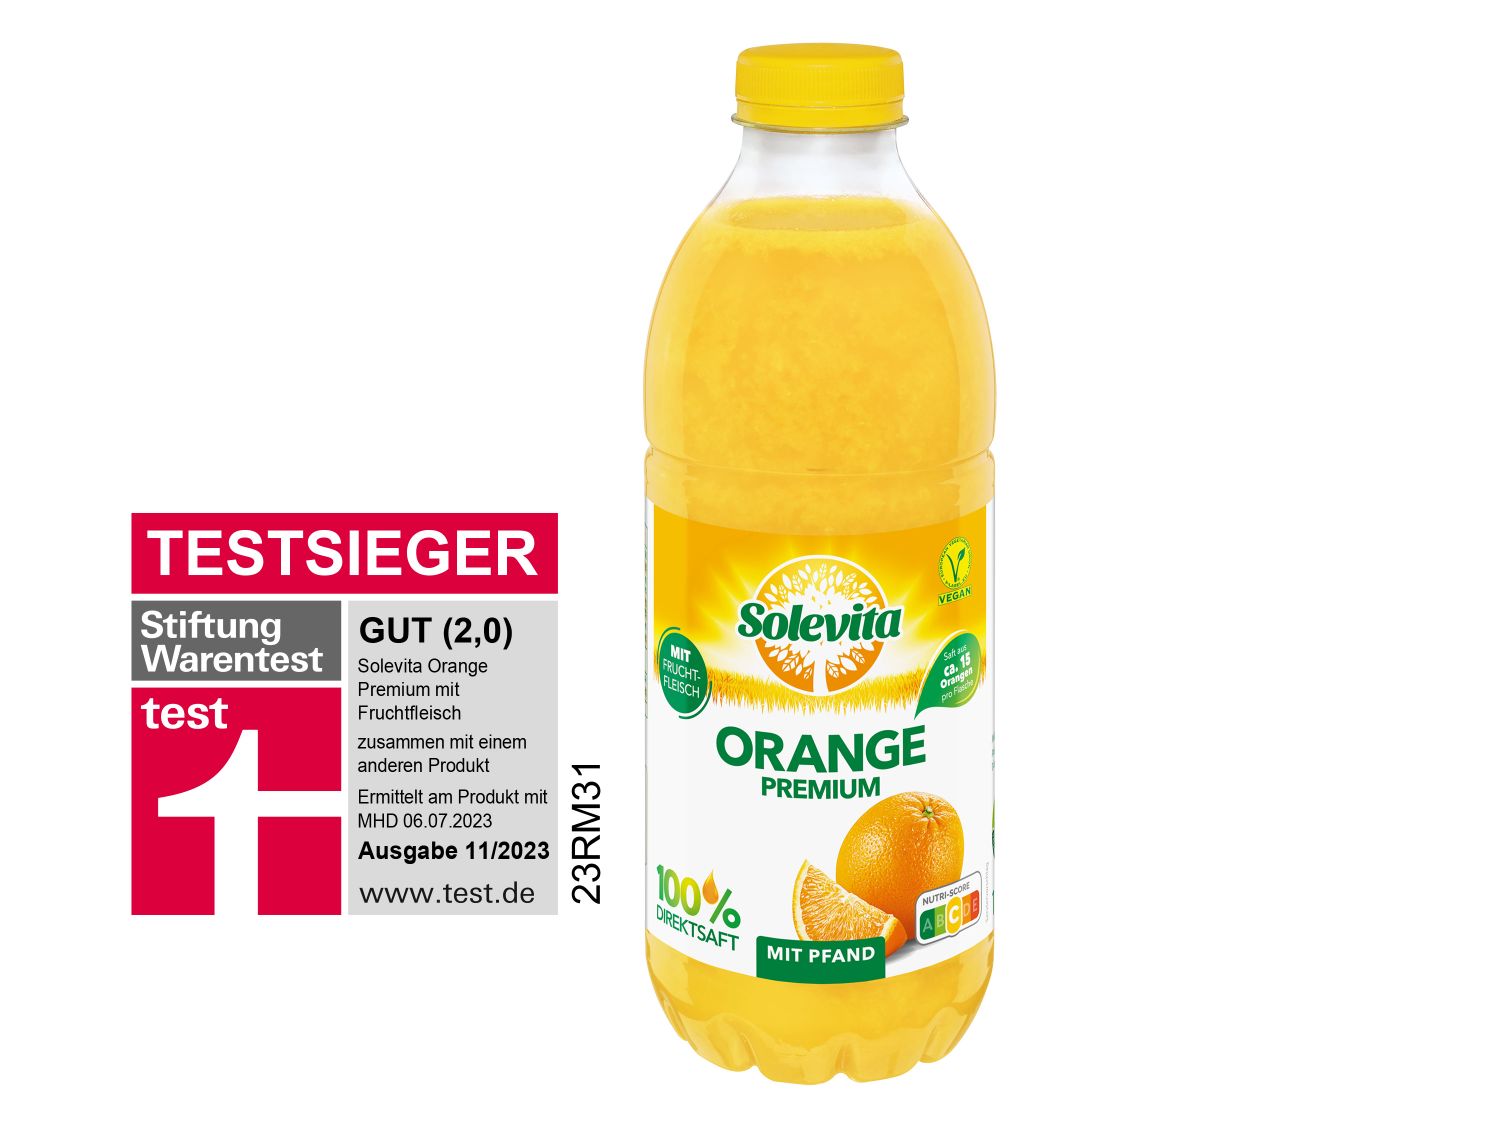 mit Lidl Premium - Orange Solevita Fruchtfleisch